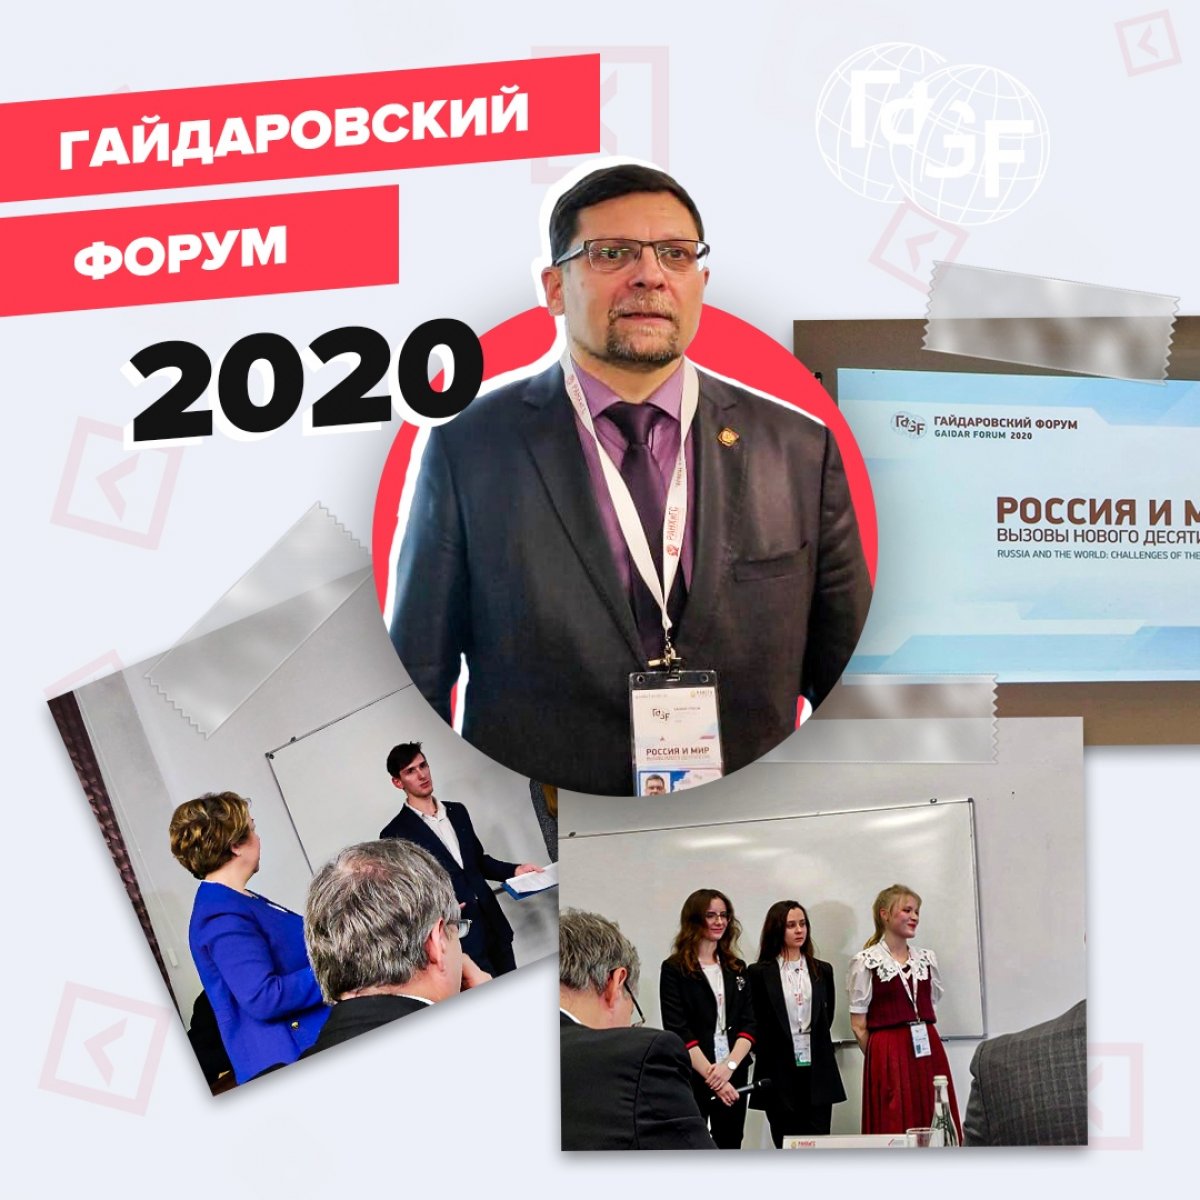 😎 15-16 января 2020 года состоялся одиннадцатый Гайдаровский форум, в котором приняли участие студенты факультета Управление нашего Университета!